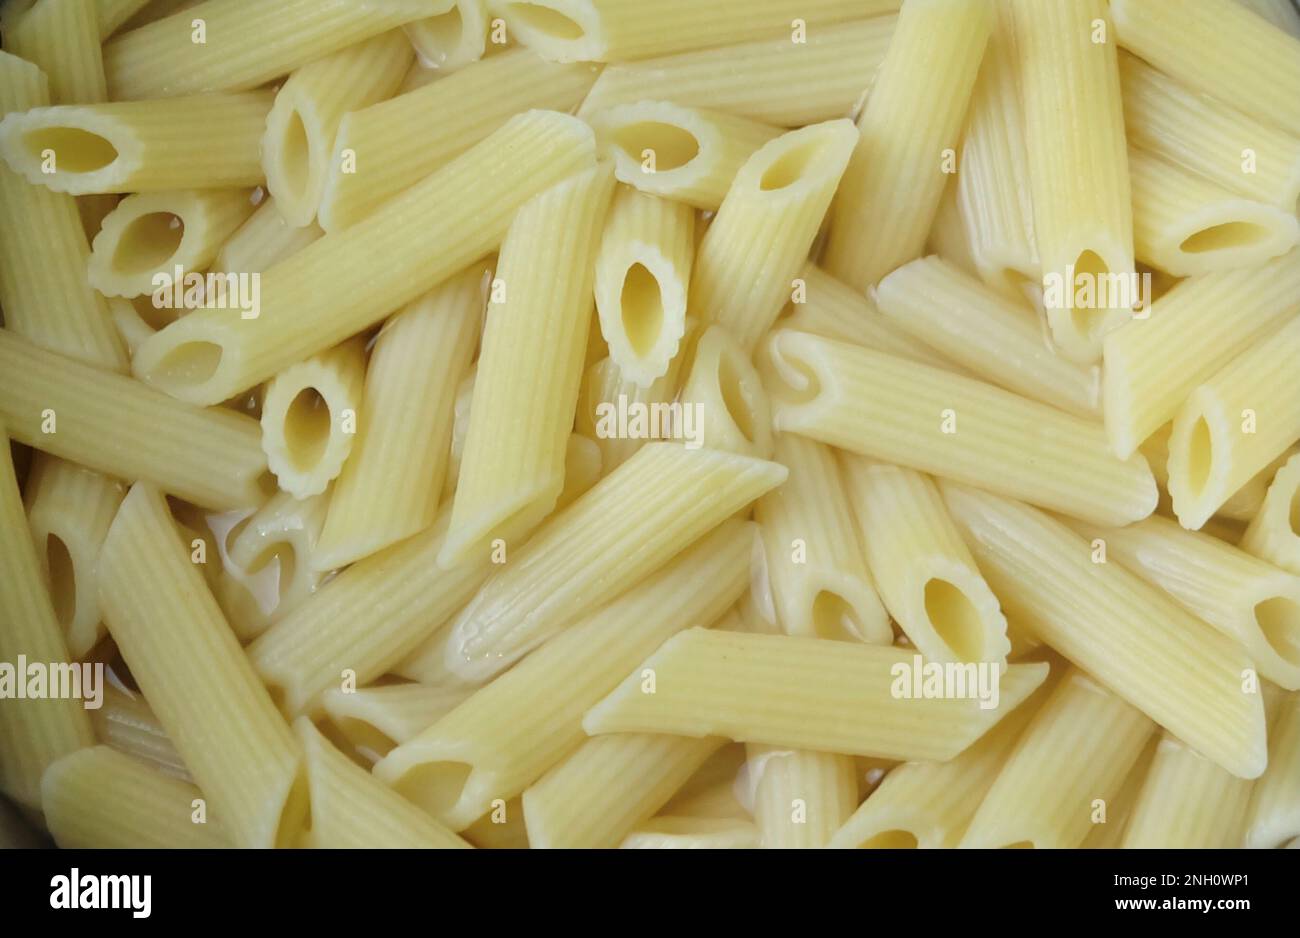 Speisen und Küche, Penne Pasta in heißem Wasser, Eine vielseitige röhrenförmige italienische Pasta, perfekt für verschiedene Gerichte mit Saucen und Zutaten. Stockfoto